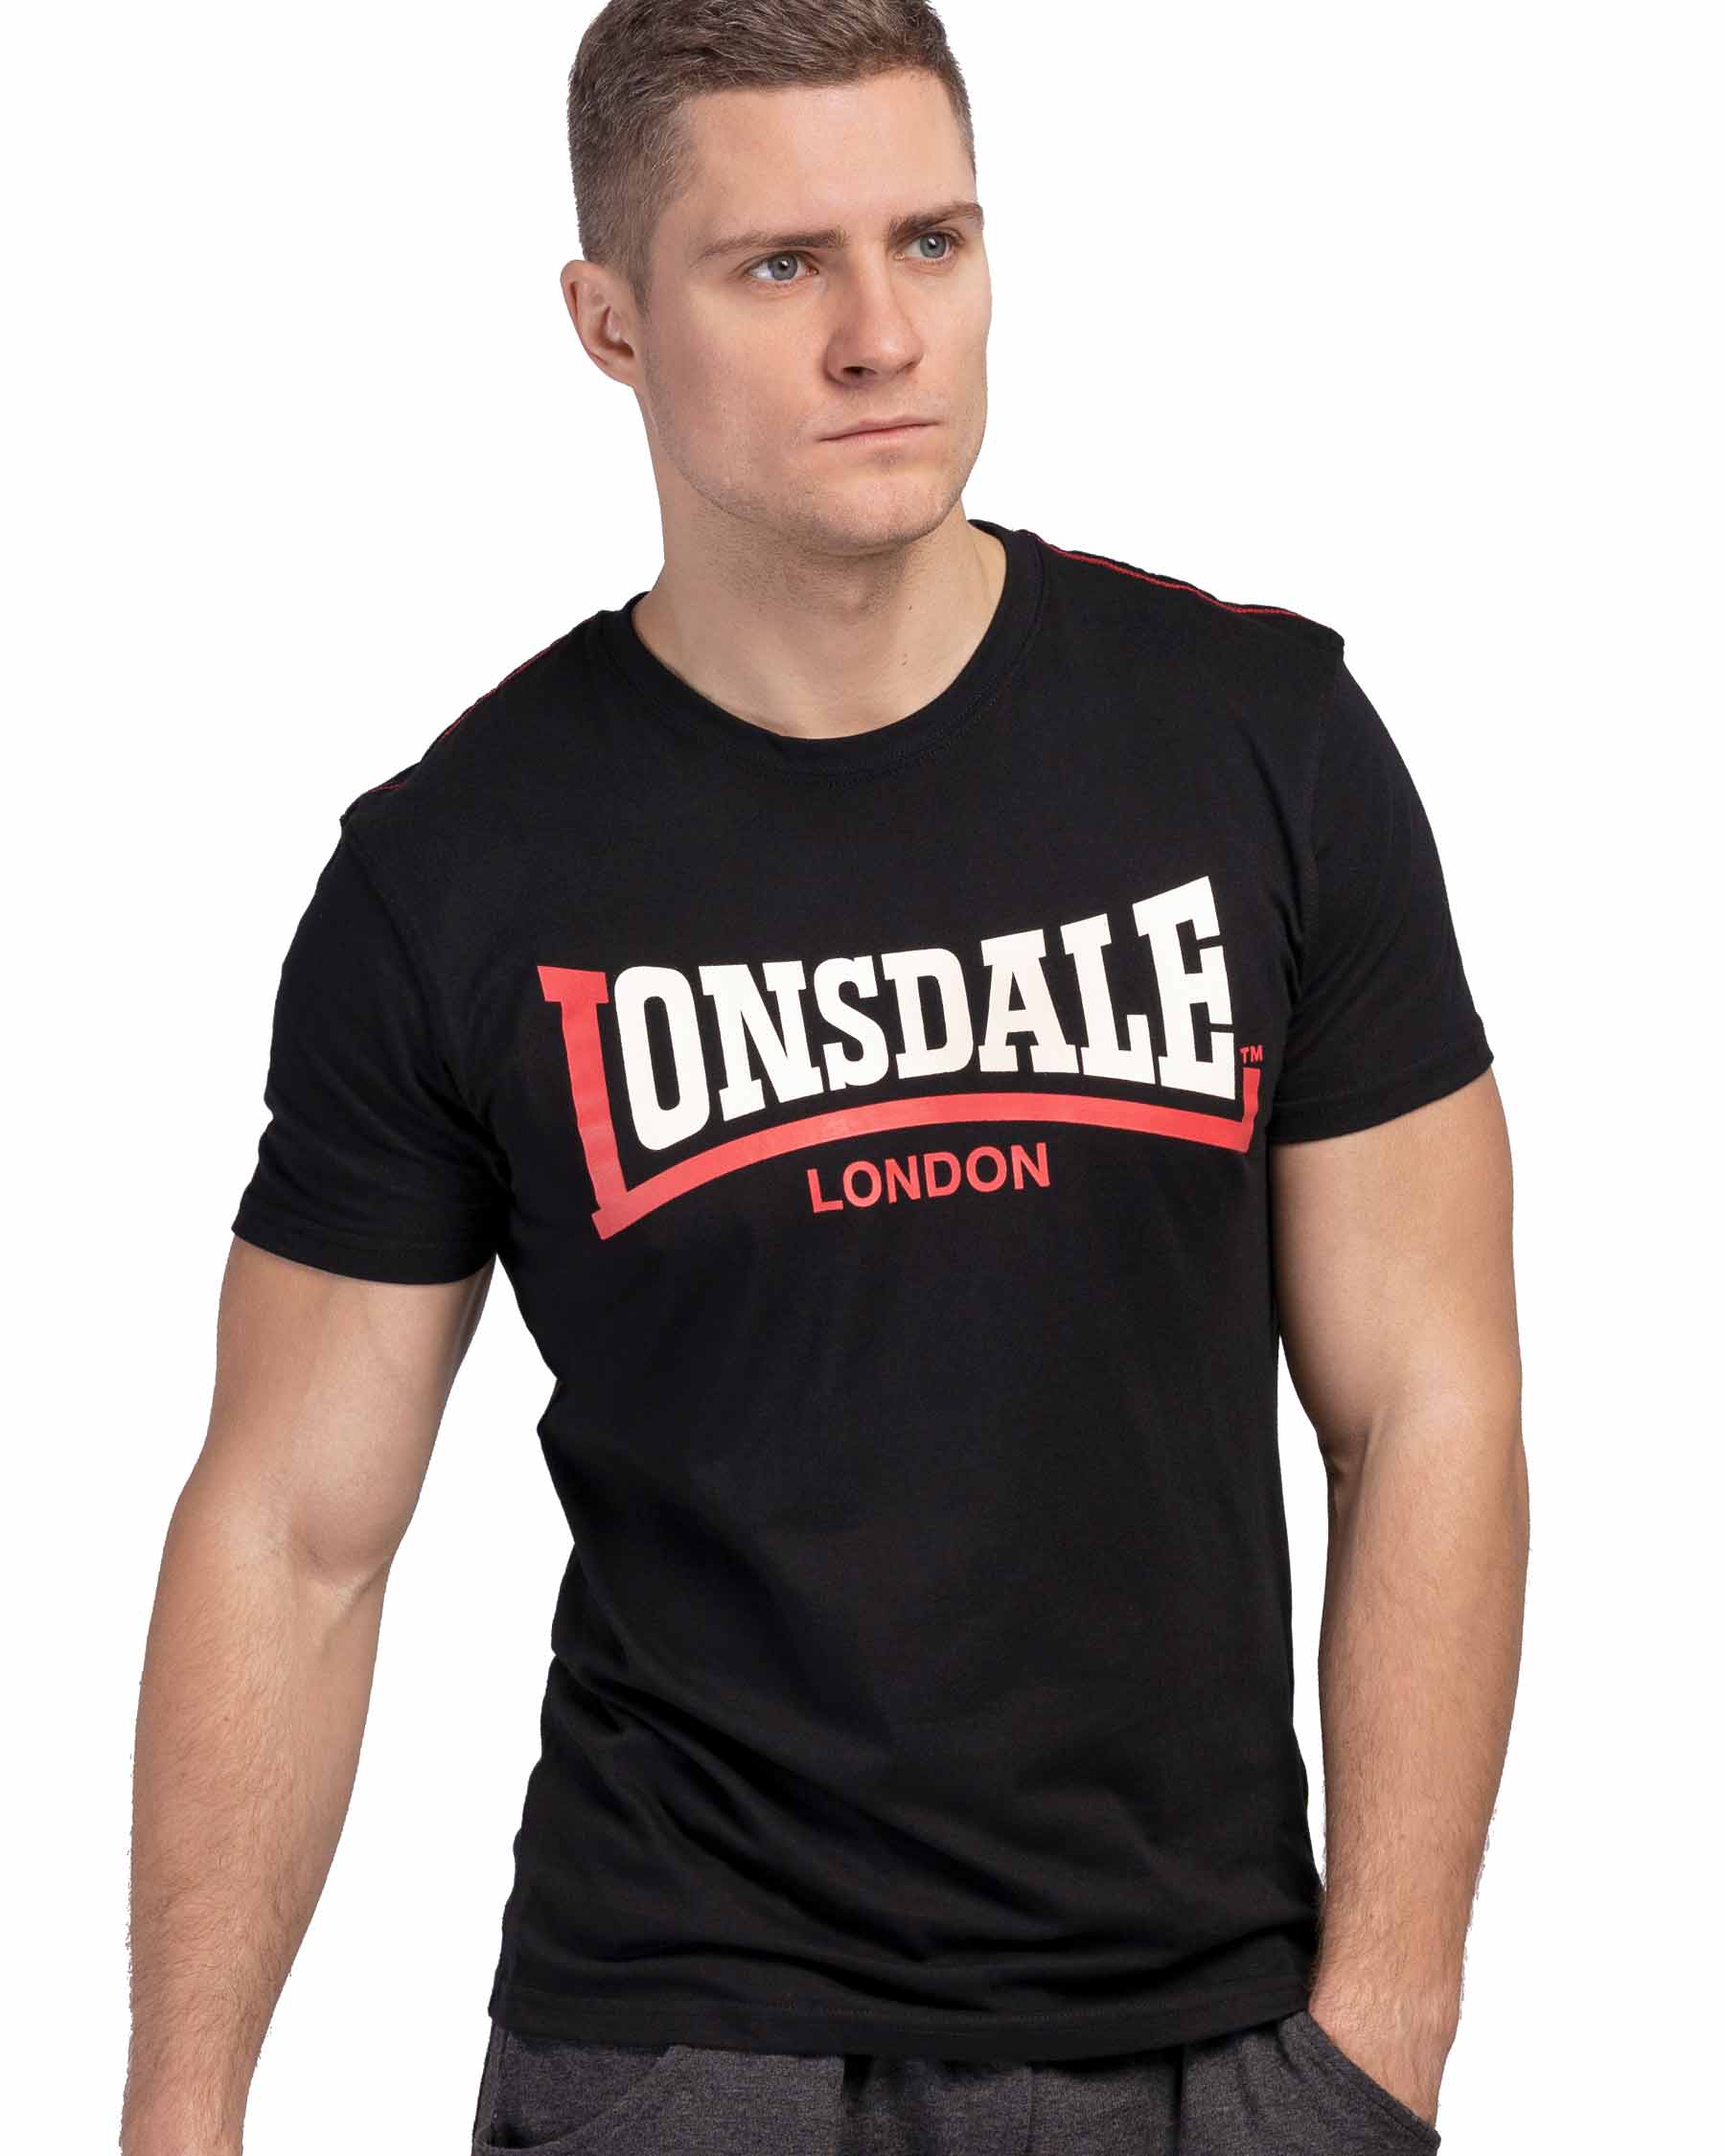 klok Scorch Prediken Lonsdale T-Shirt Two Tone - Mens T-Shirt - Lonsdale London